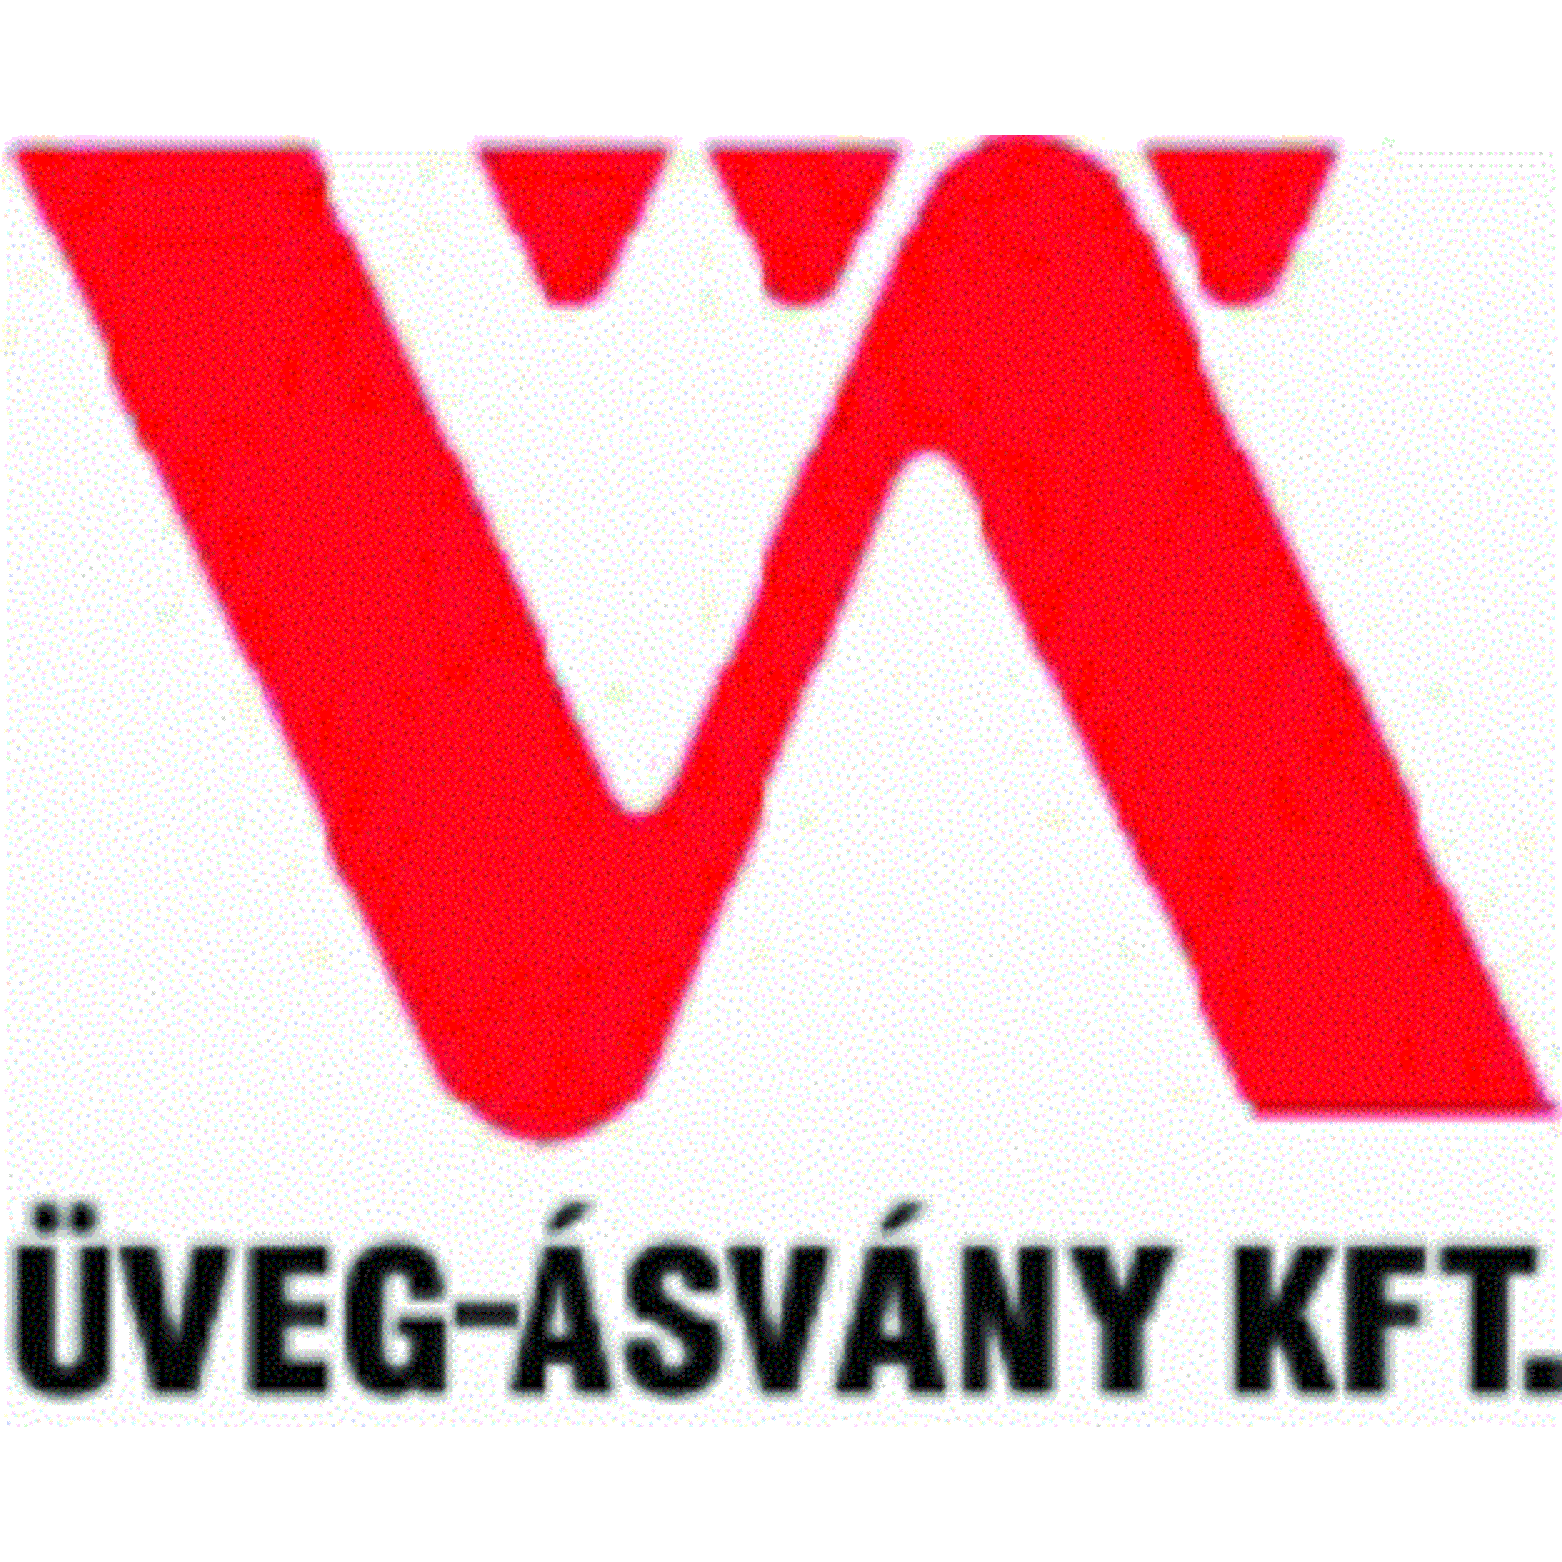 Üveg-Ásvány Bányászati Ipari Kft. Logo